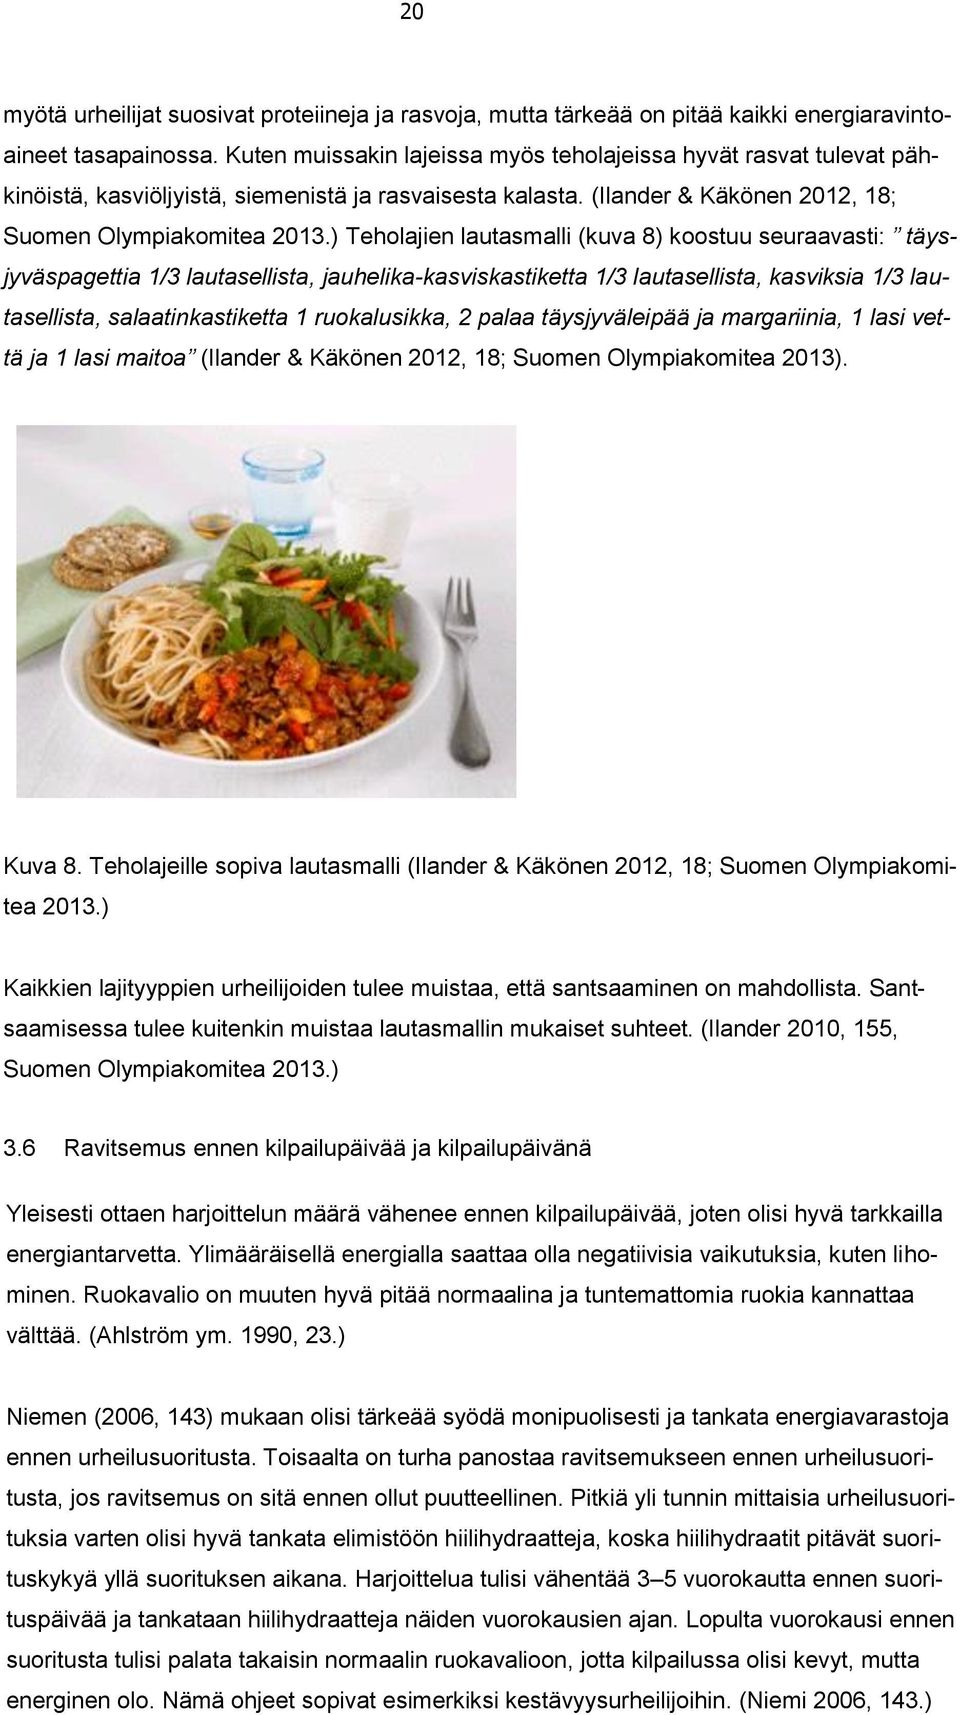 ) Teholajien lautasmalli (kuva 8) koostuu seuraavasti: täysjyväspagettia 1/3 lautasellista, jauhelika-kasviskastiketta 1/3 lautasellista, kasviksia 1/3 lautasellista, salaatinkastiketta 1